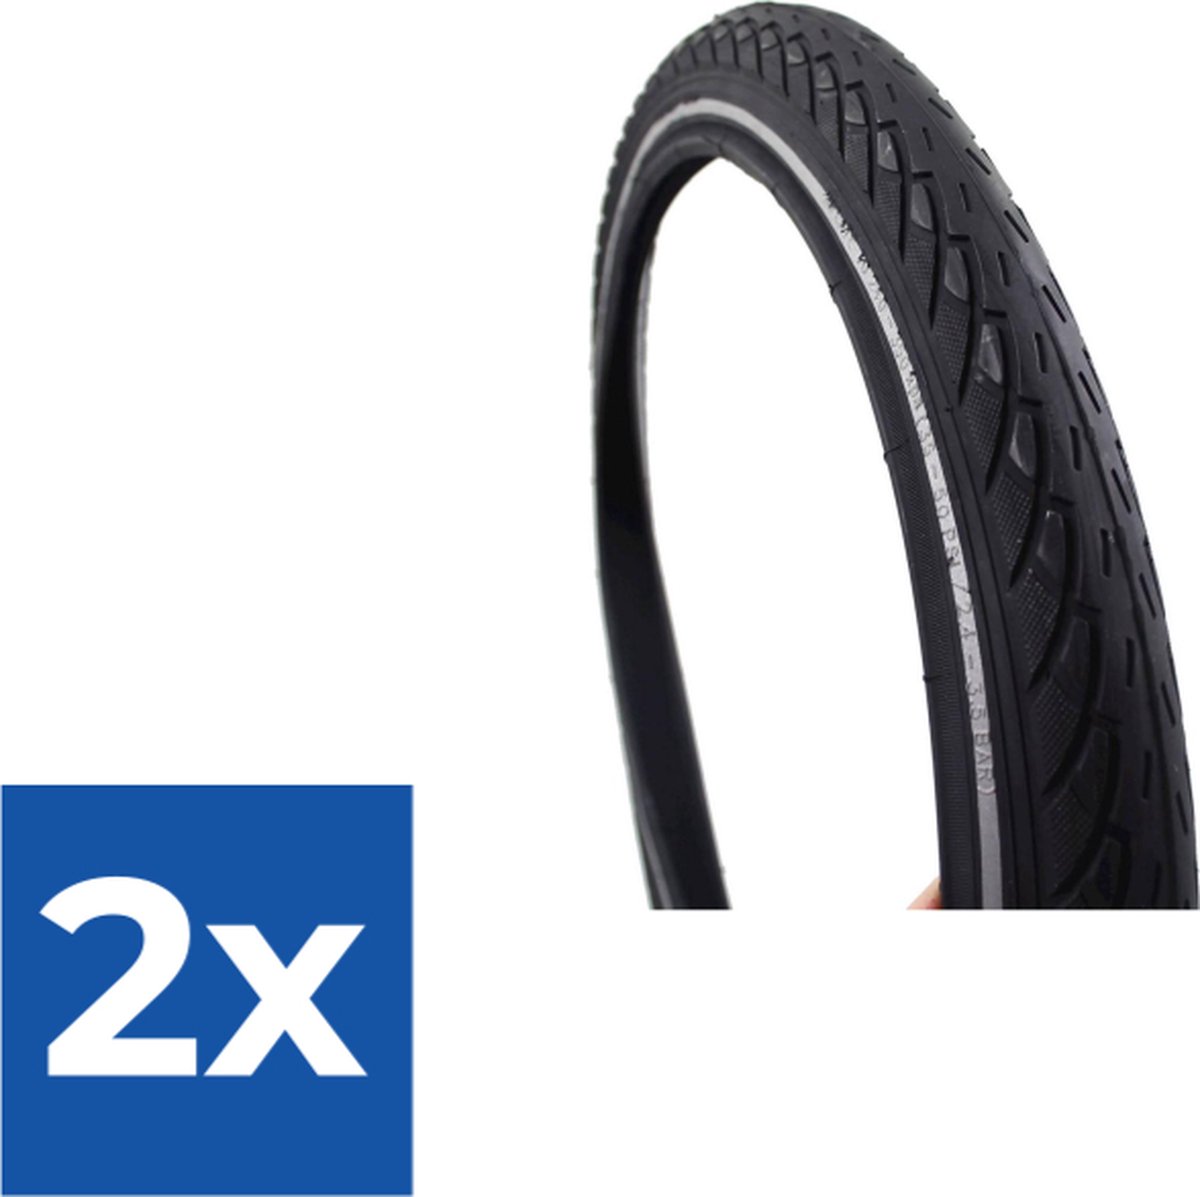 Deli Tire Buitenband SA-206 22 x 1.75 zw refl - Voordeelverpakking 2 stuks